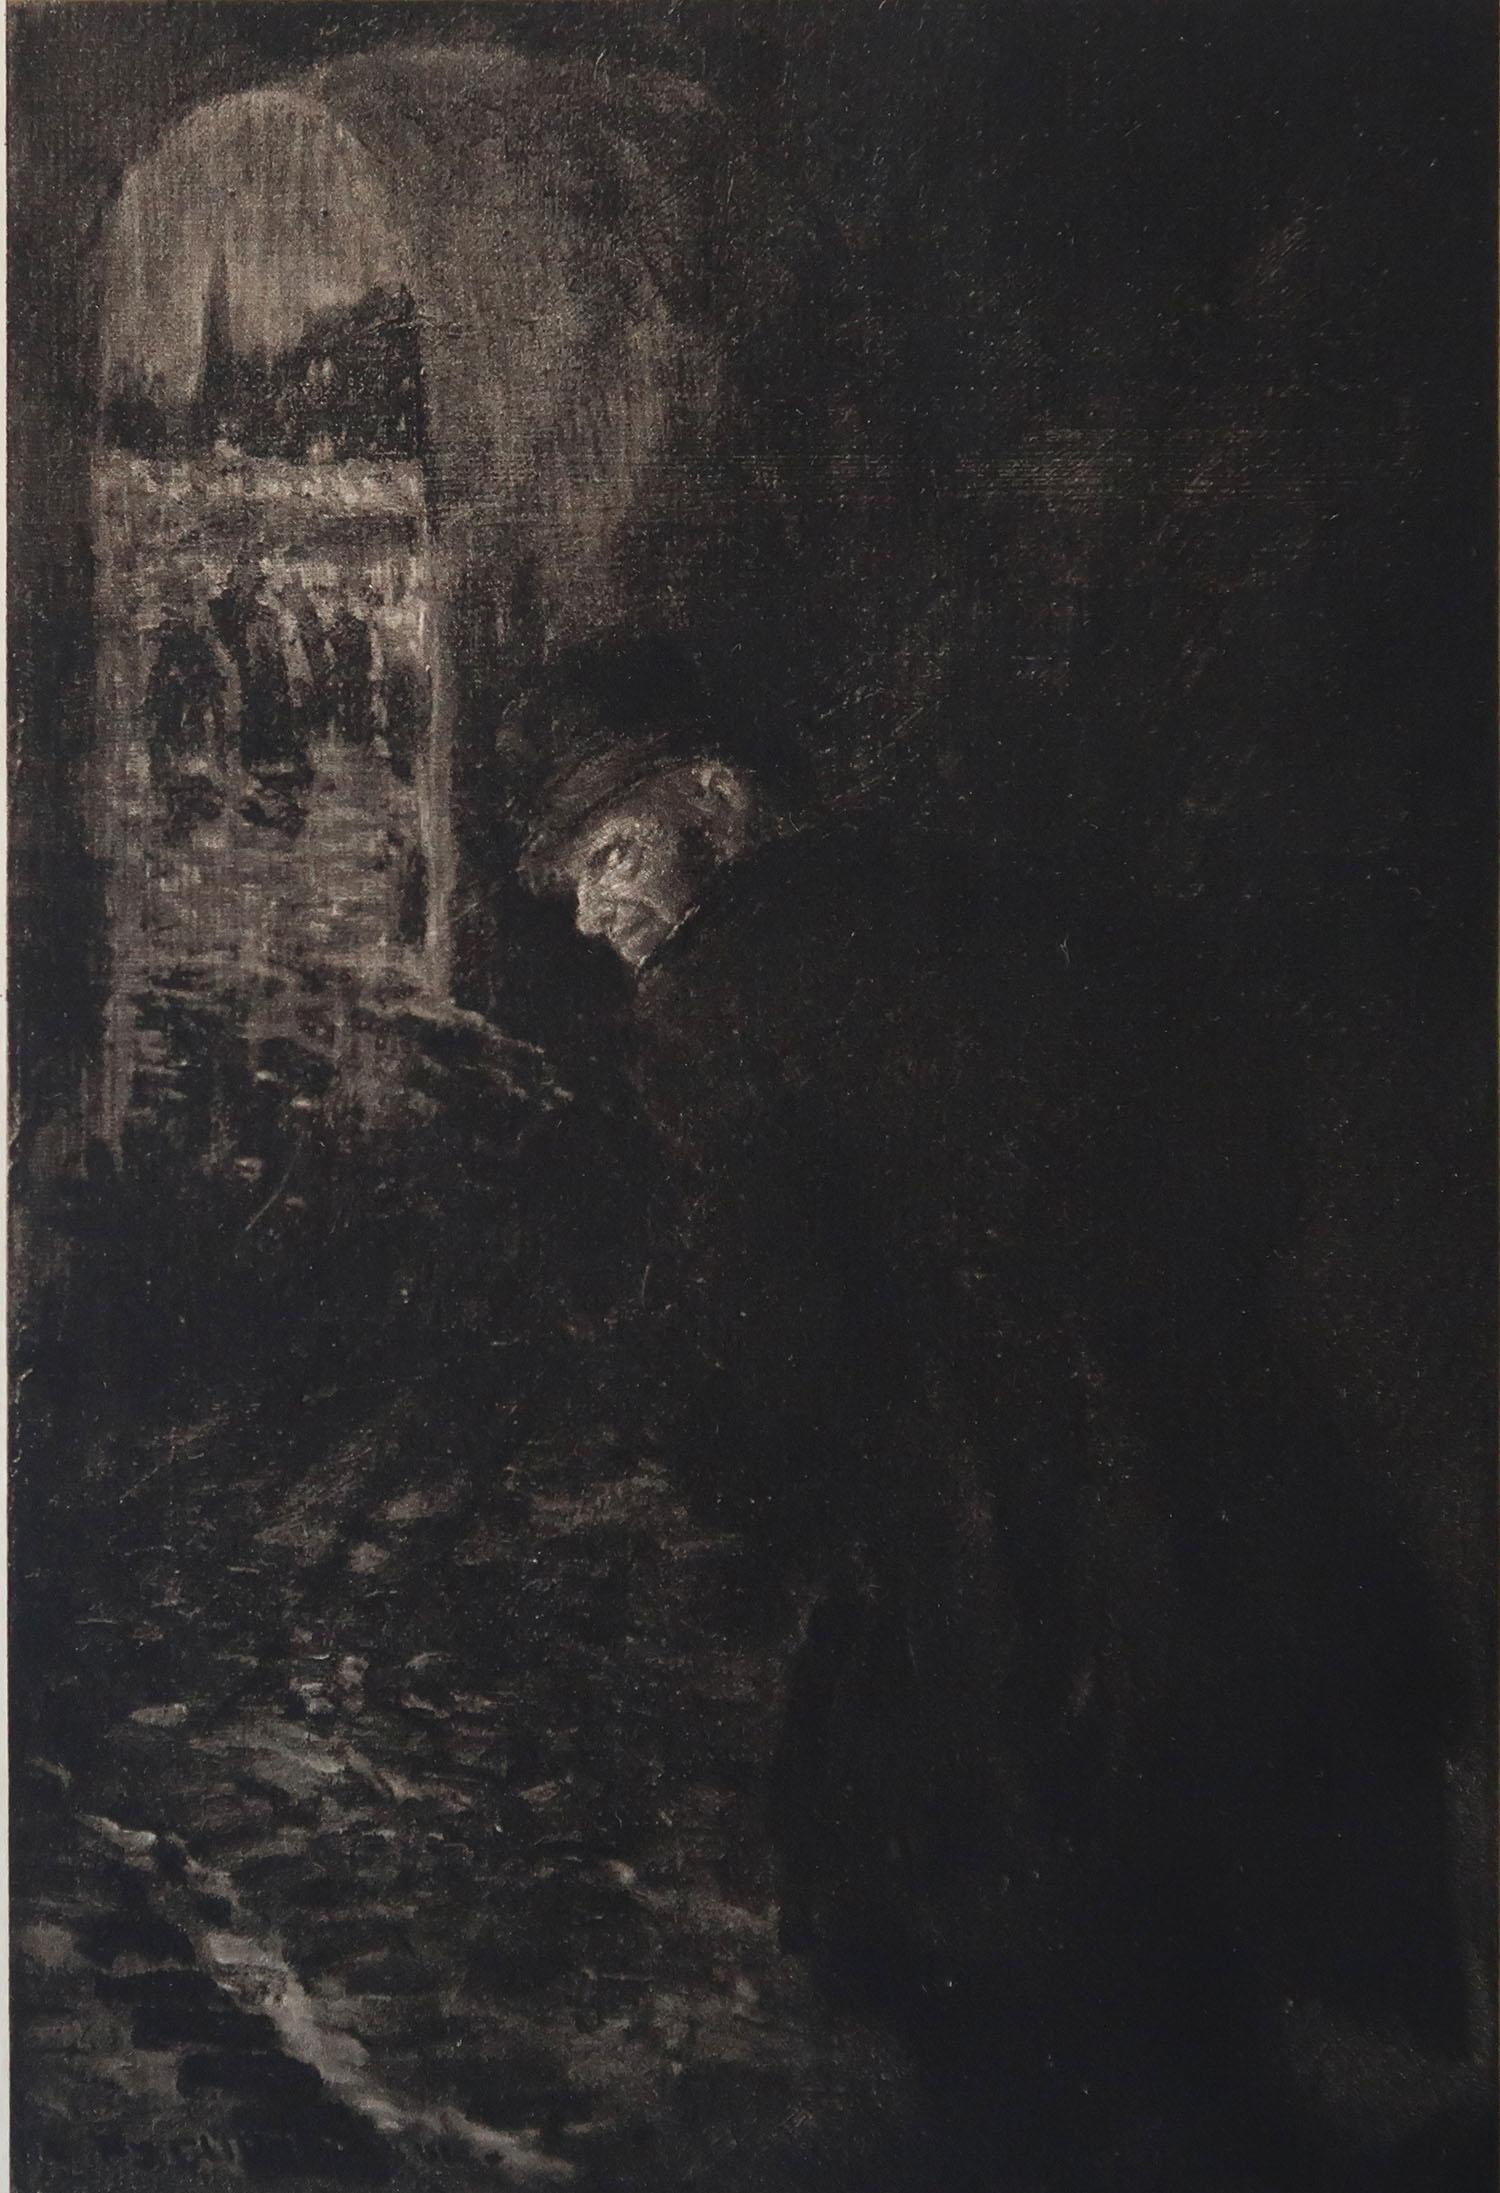 Image sensationnelle de Frederick Simpson Coburn.

Dans le style de l'un de mes artistes préférés, Goya.

Photogravure

Edition limitée à 300 exemplaires. C'est le numéro 84.

Extrait des Œuvres complètes d'Edgar Allen Poe

Publié par